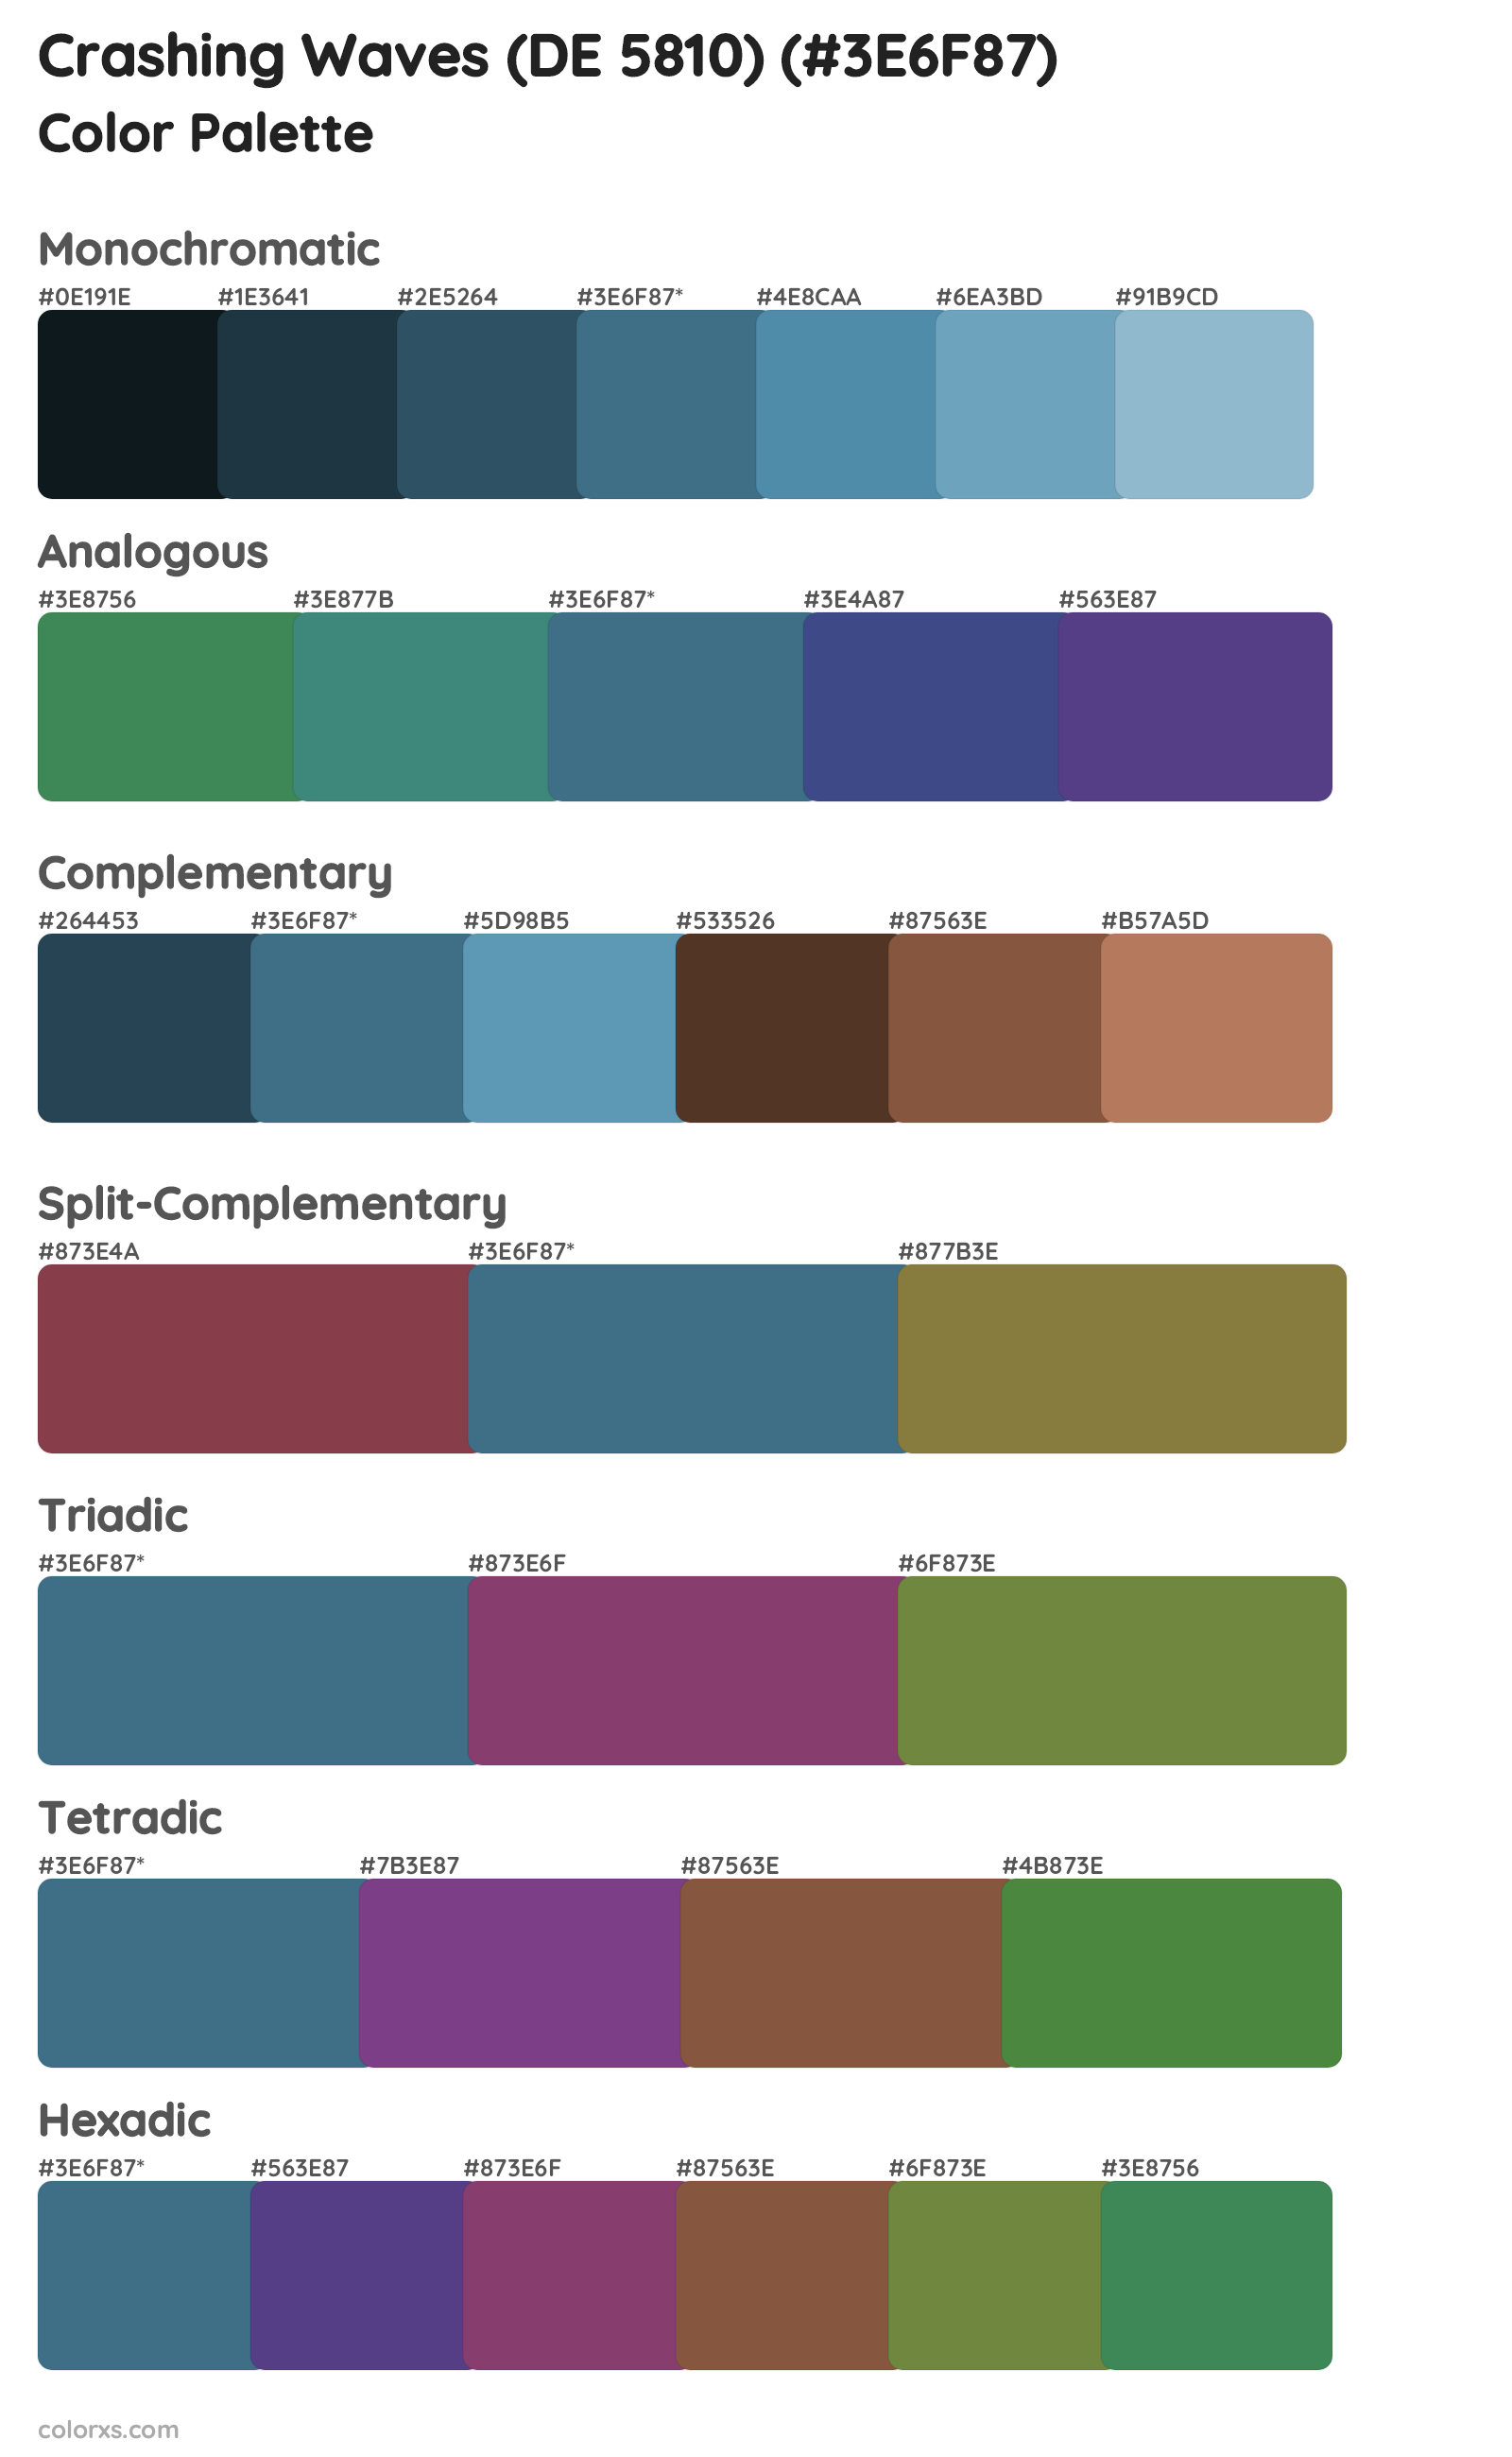 Crashing Waves (DE 5810) Color Scheme Palettes